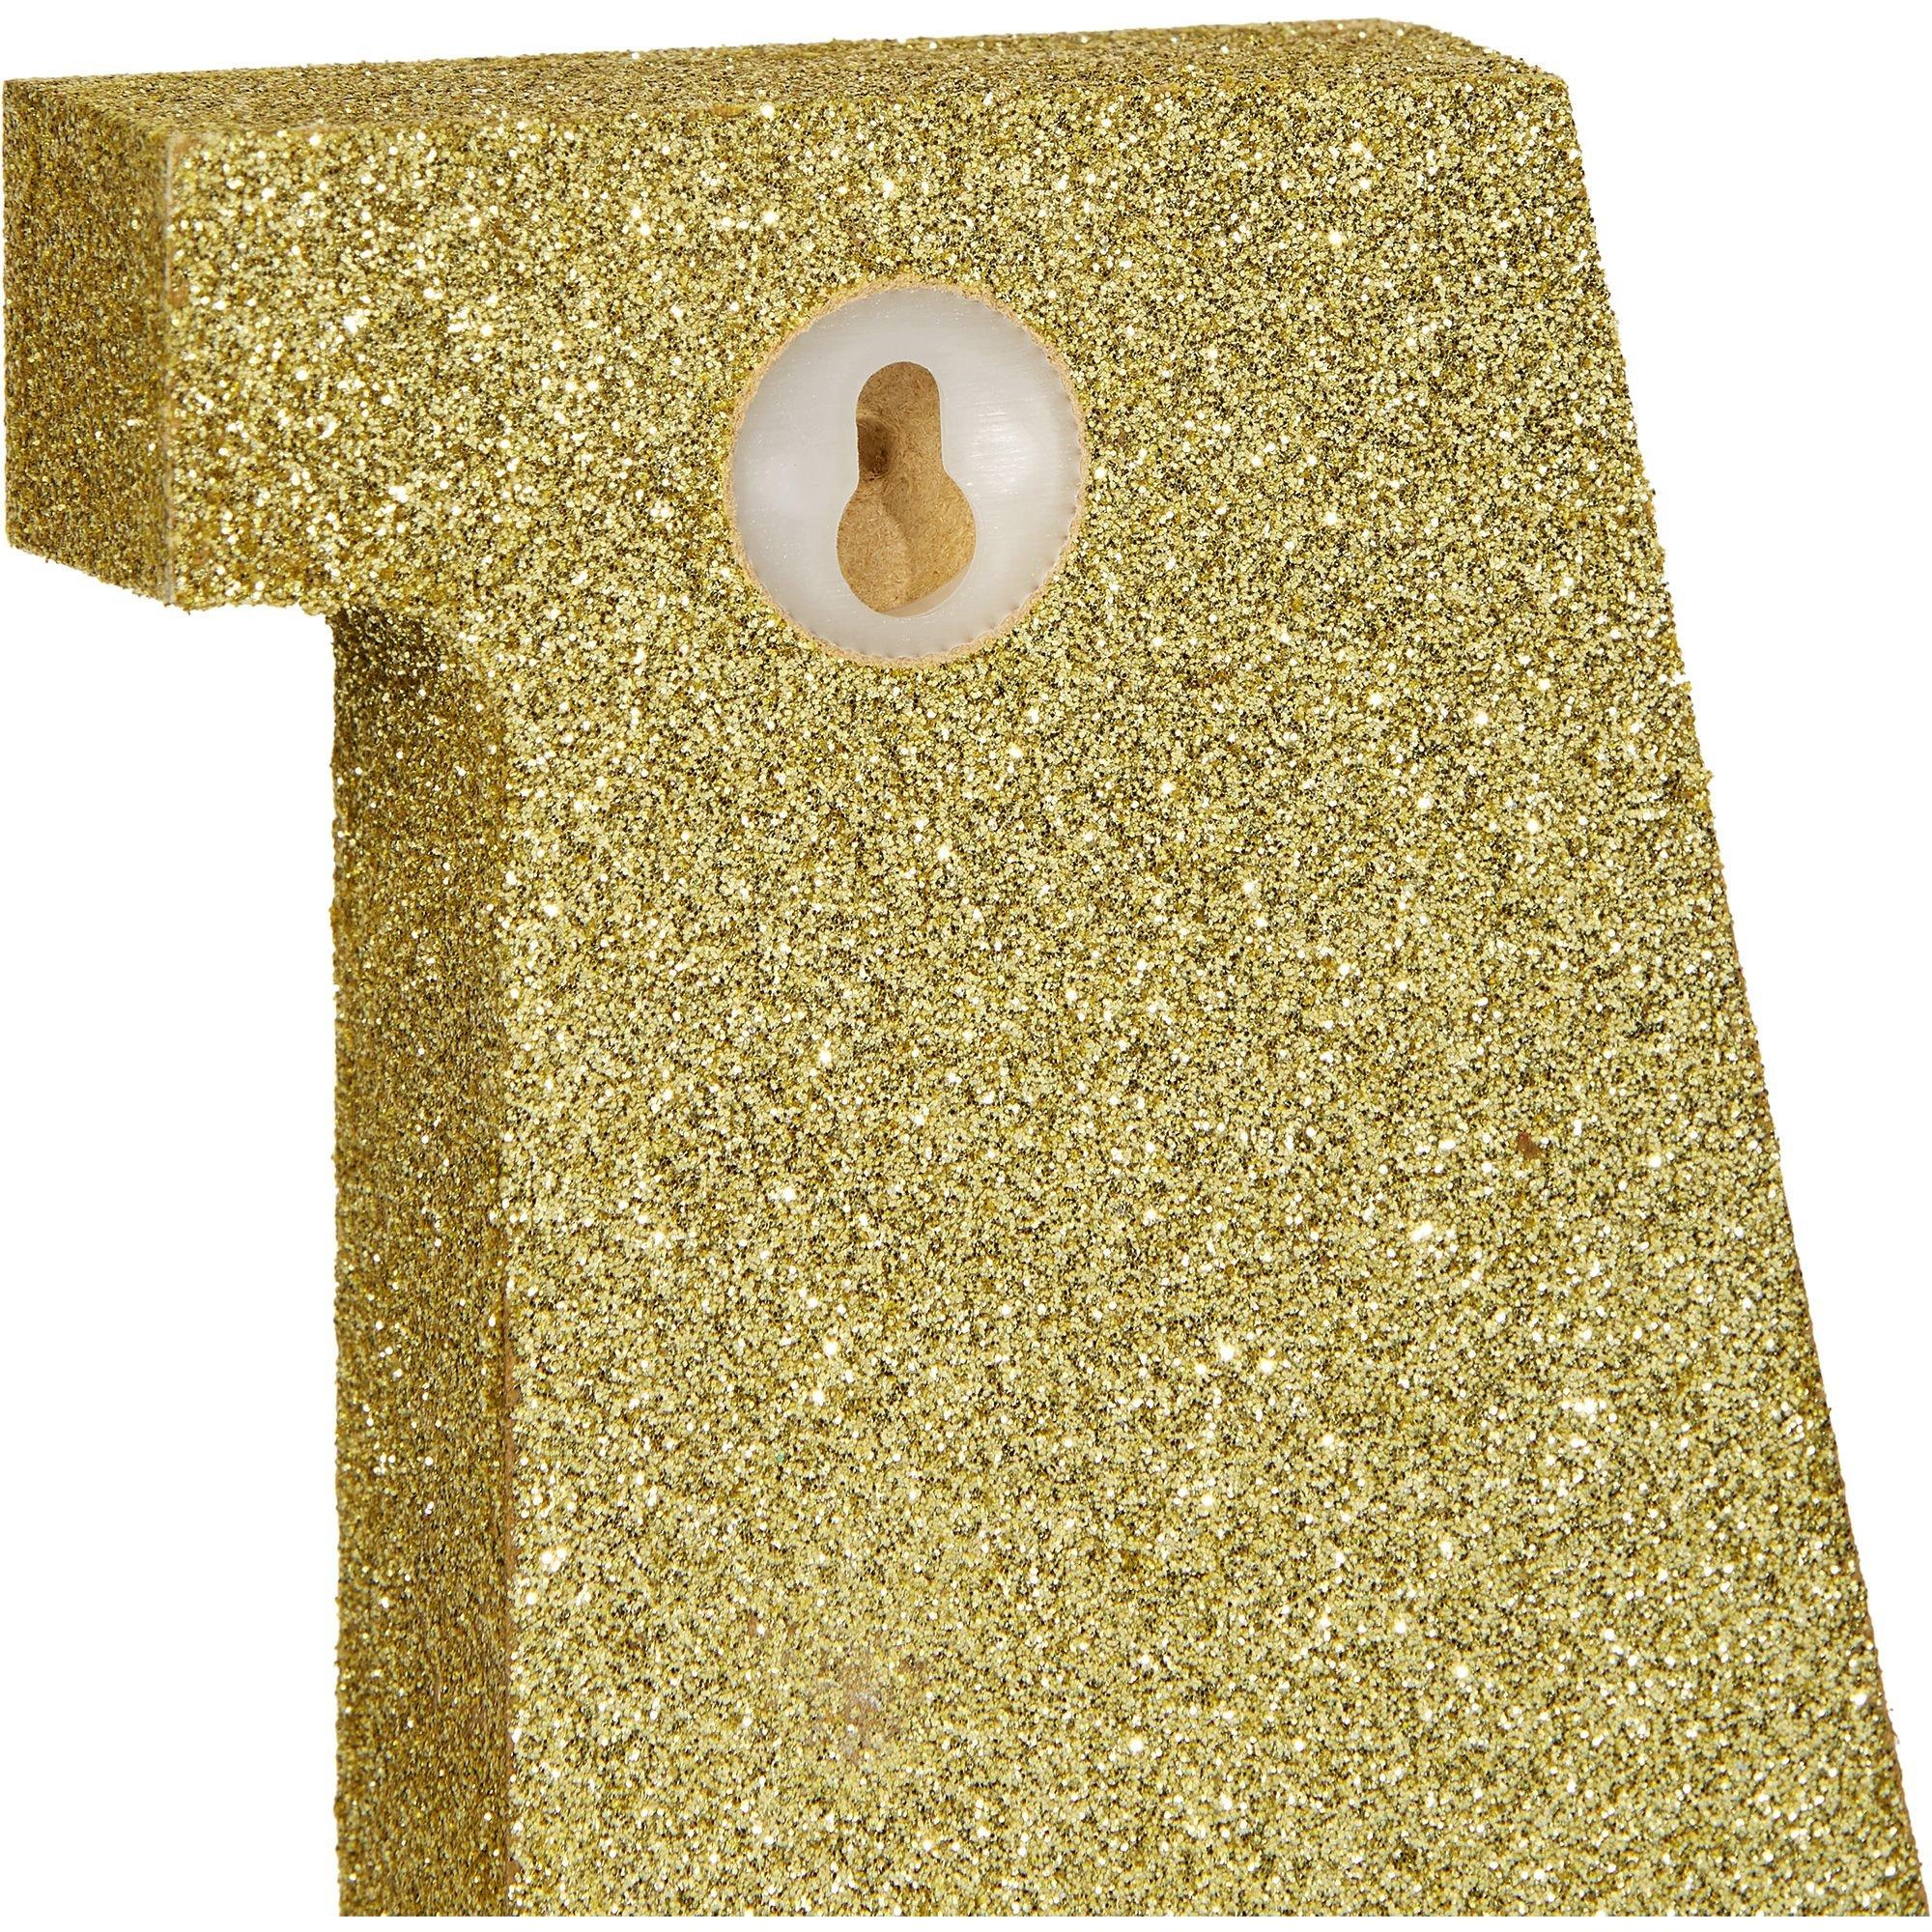 Glitter Gold Letter C Sign